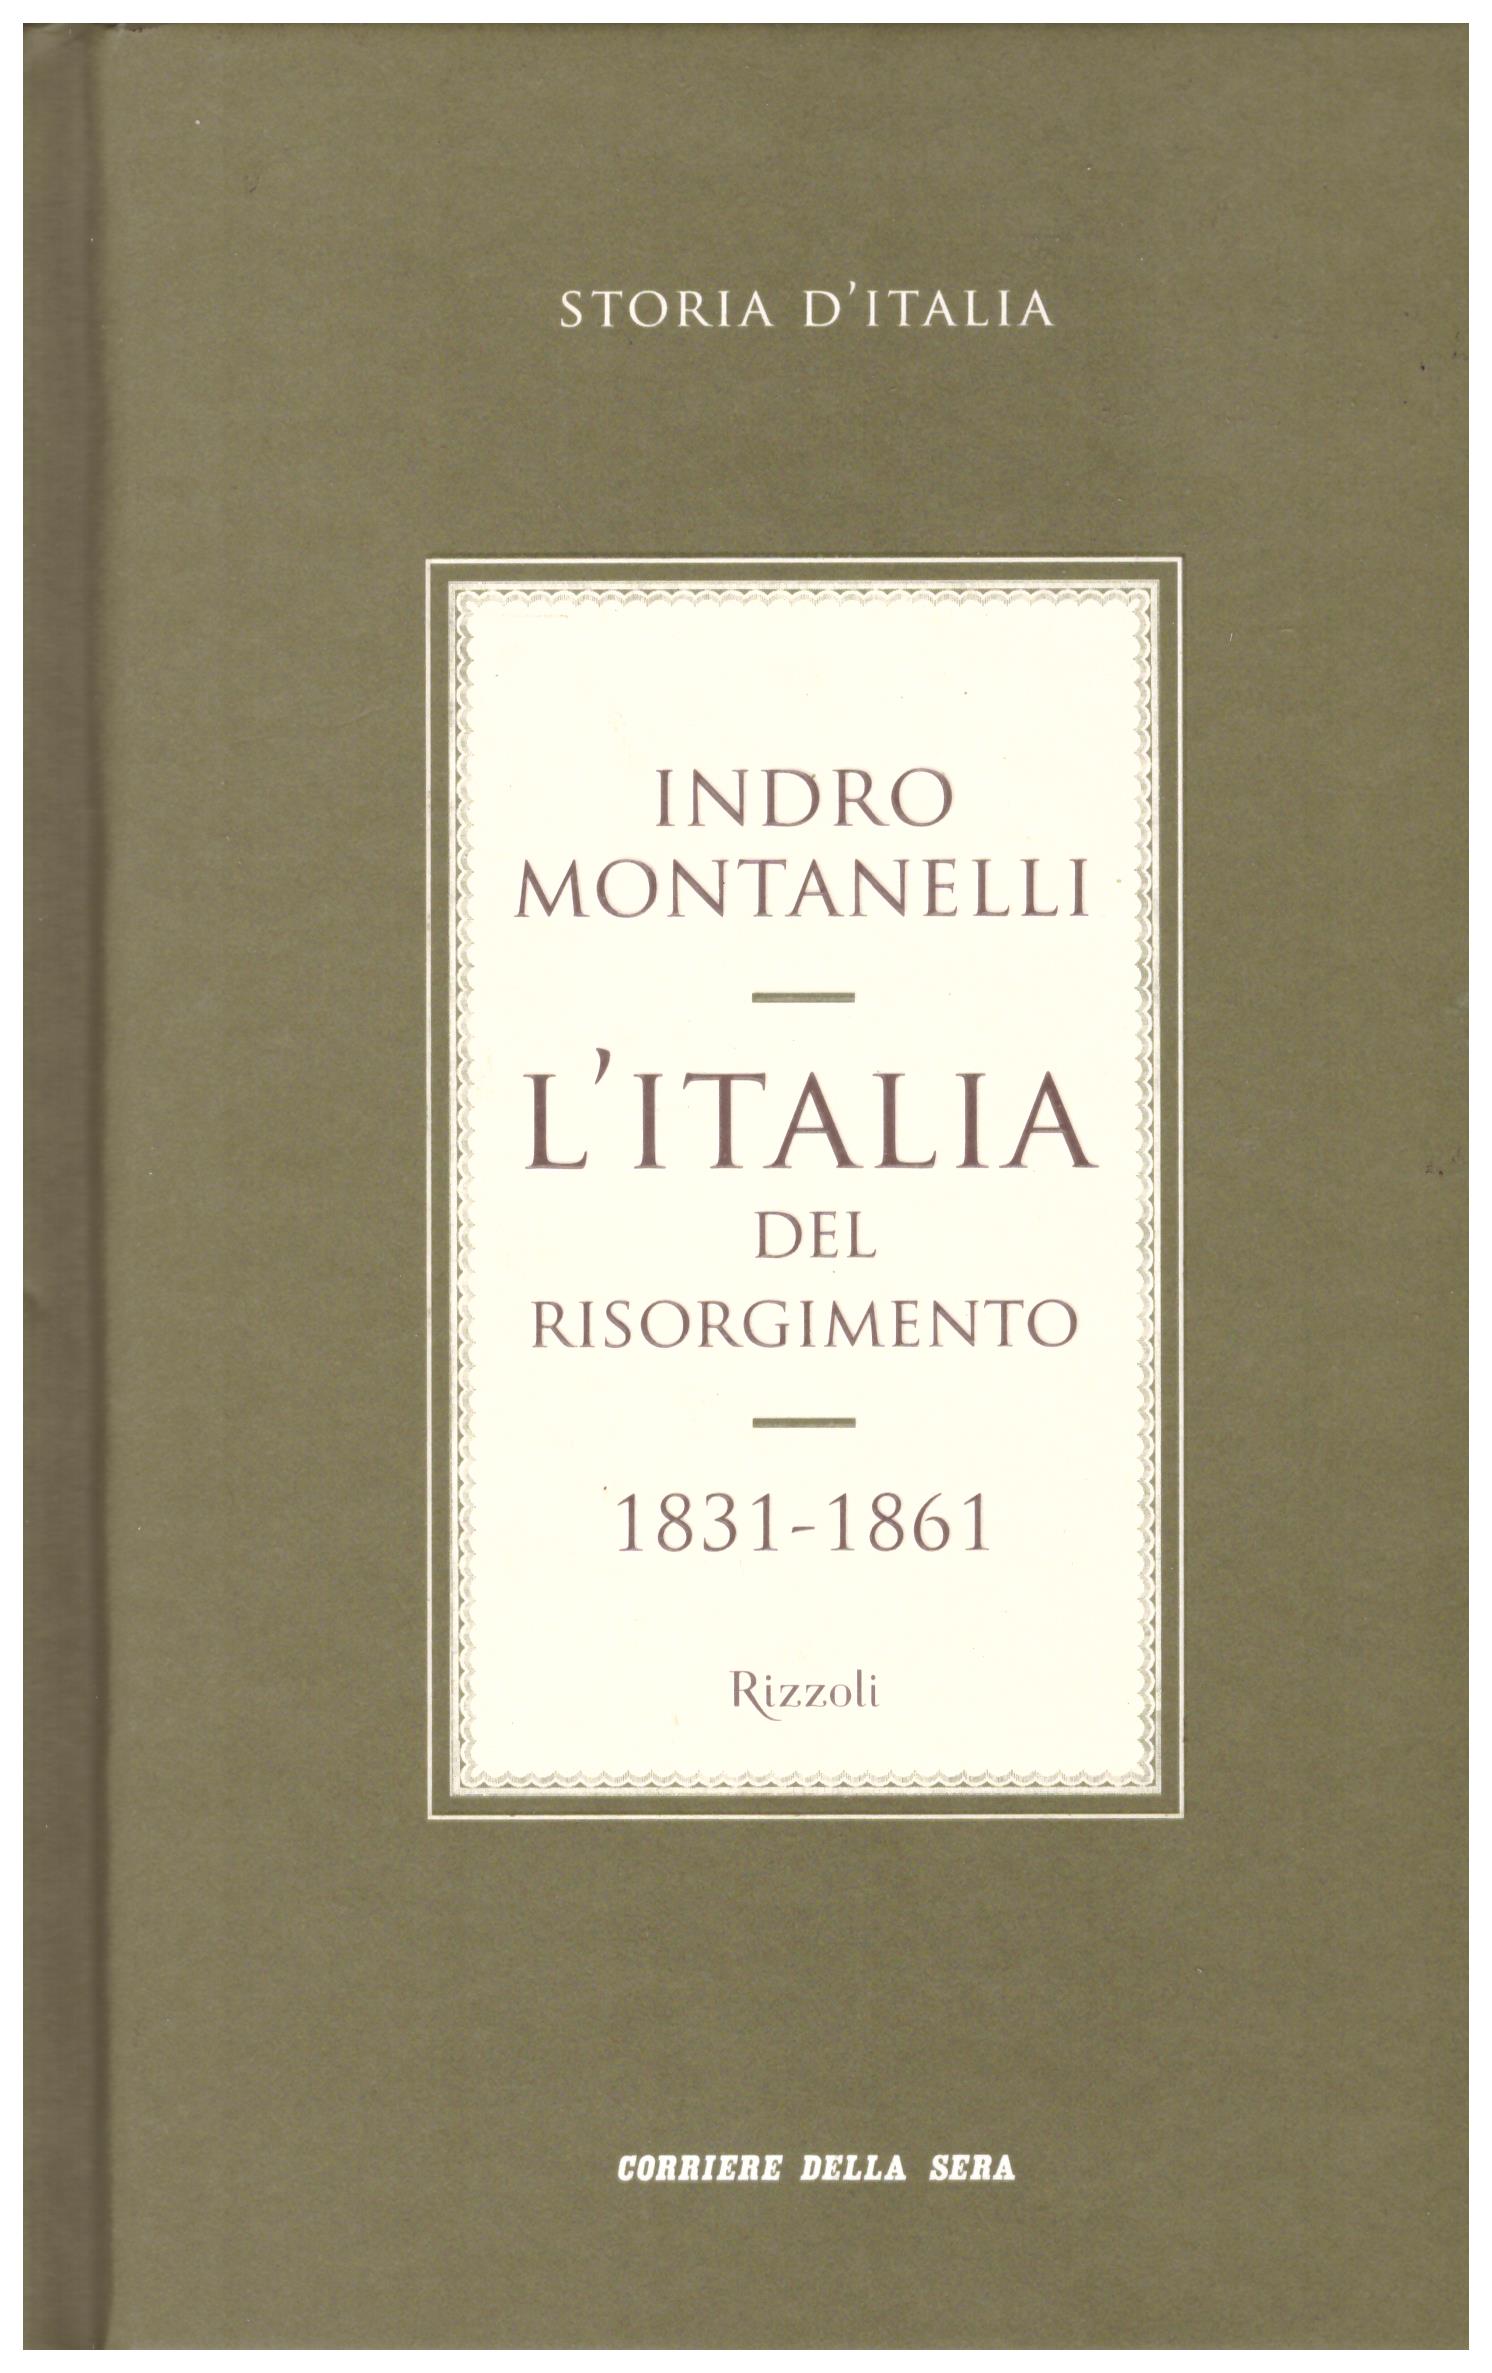 Titolo: Storia d'Italia, L'Italia del Risorgimento 1831-1861     Autore: Indro Montanelli    Editore: Corriere della Sera